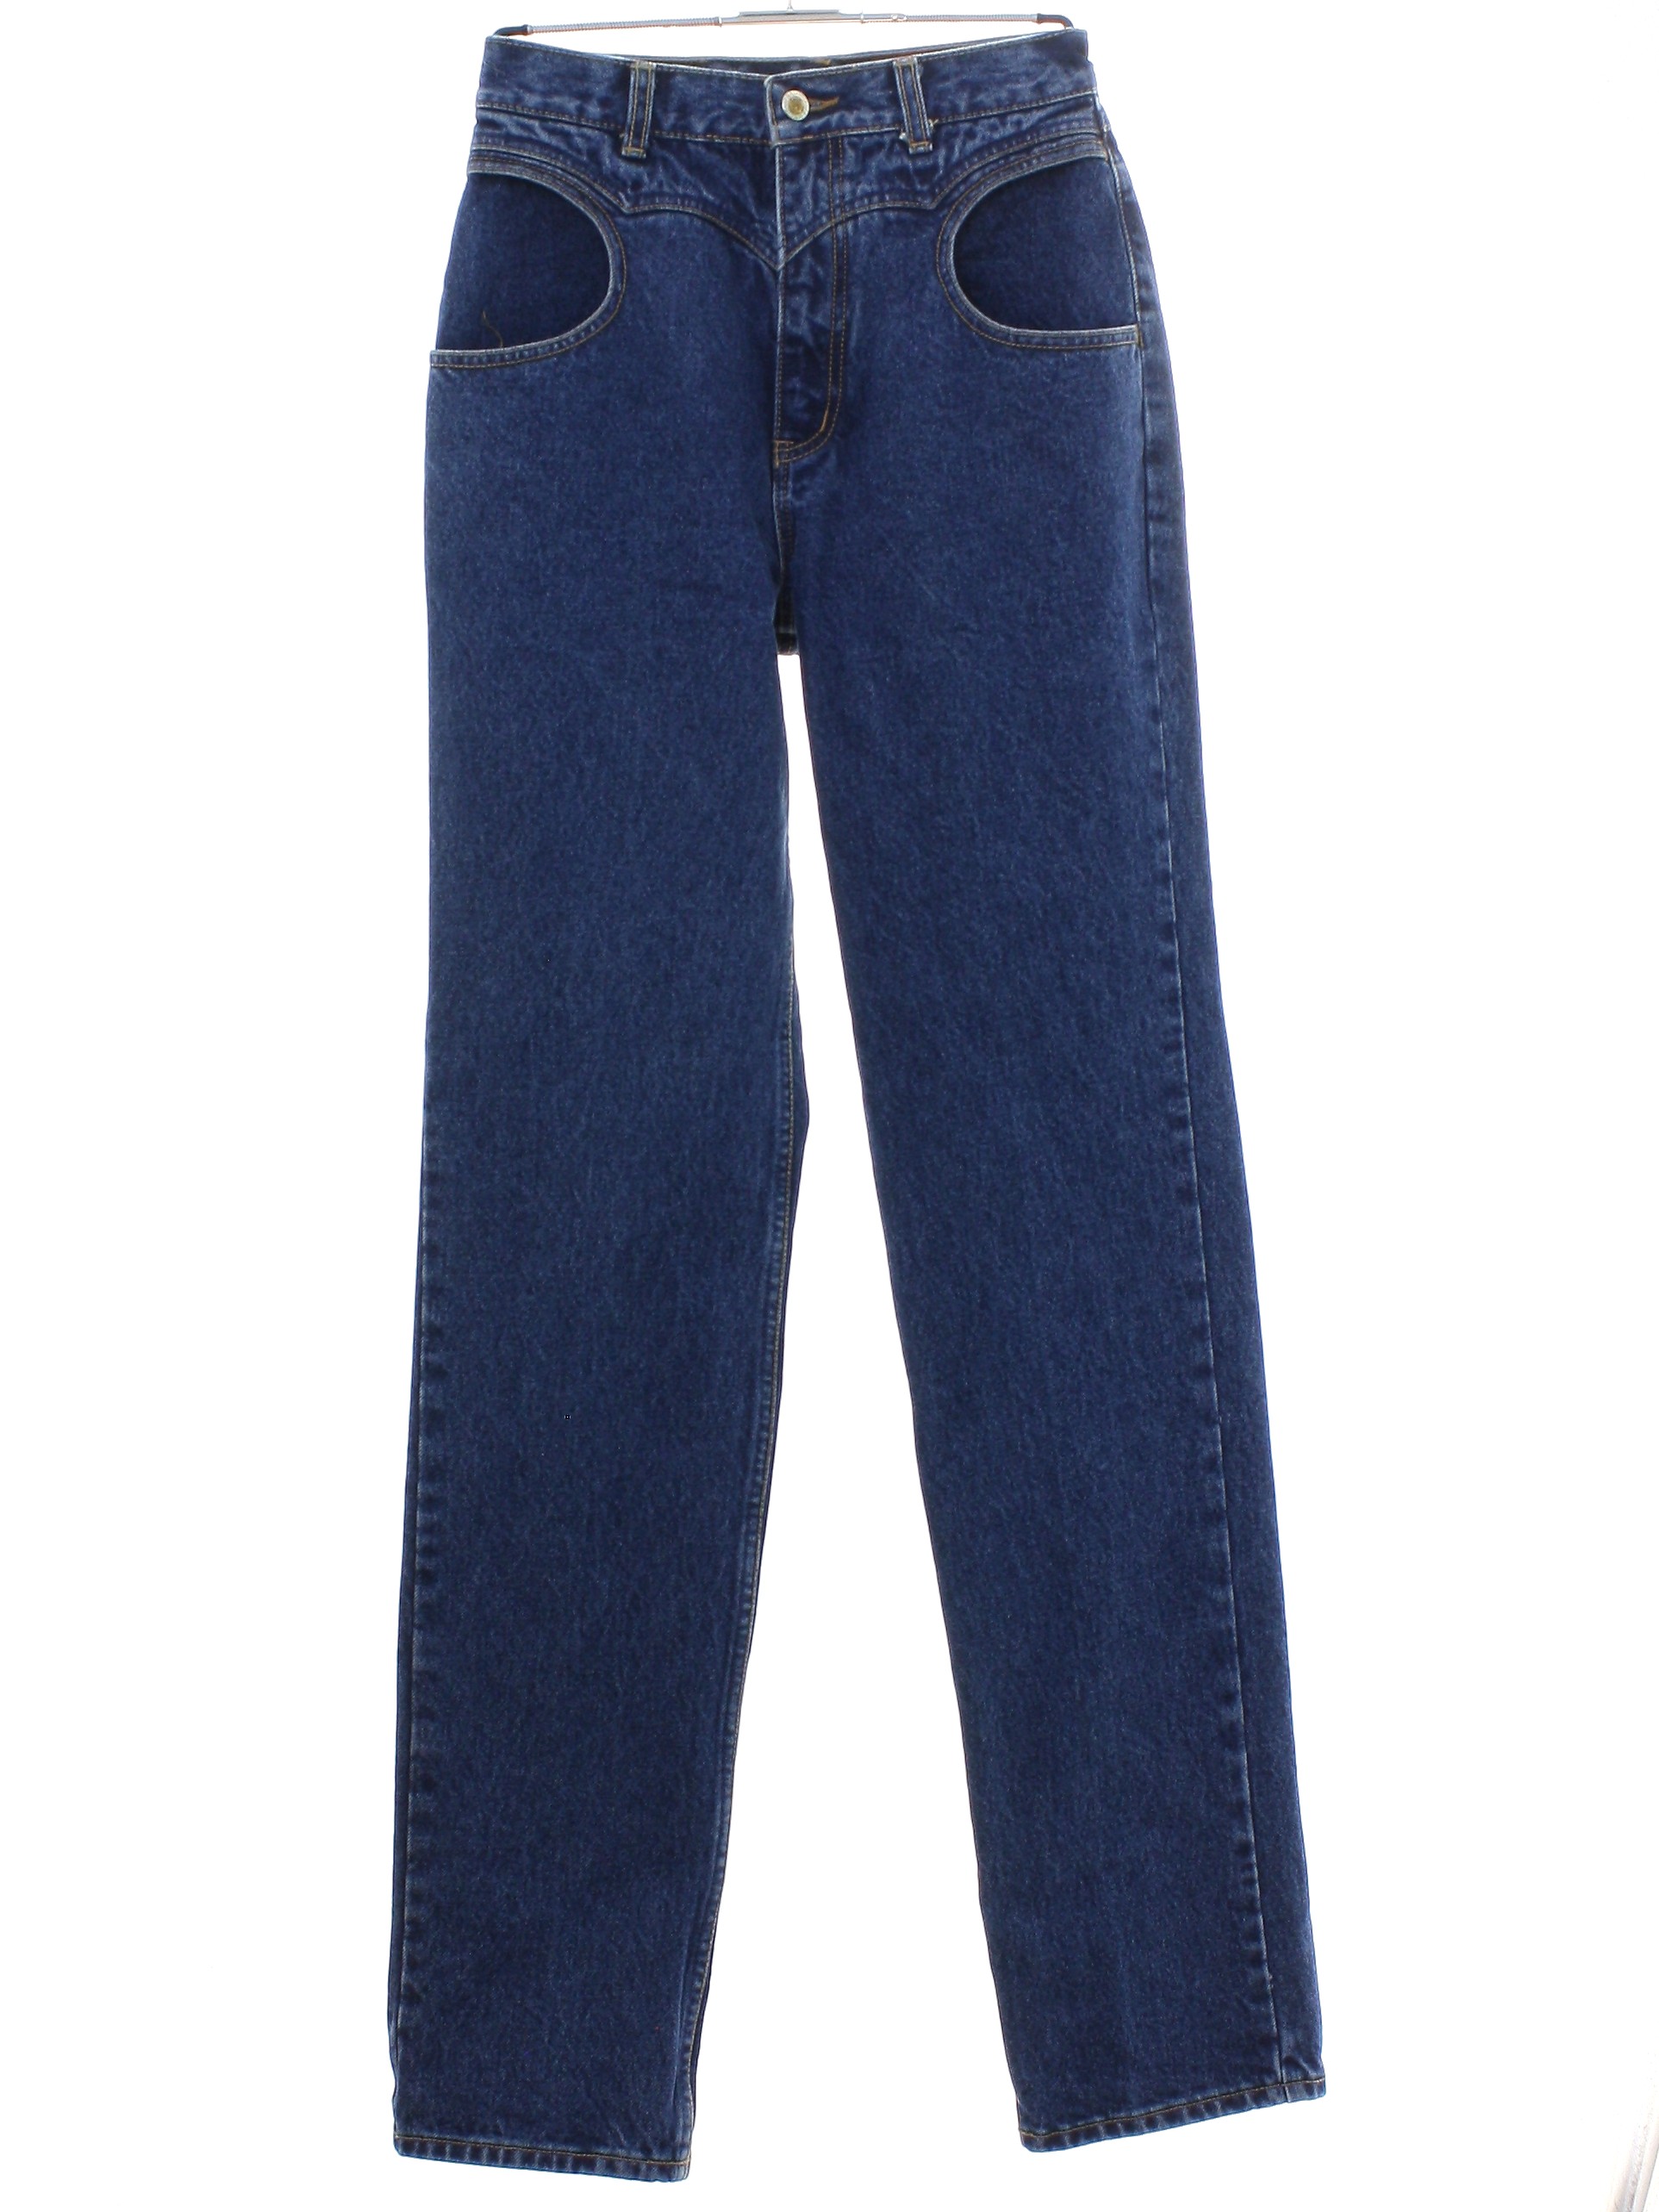 lawman jeans 80s